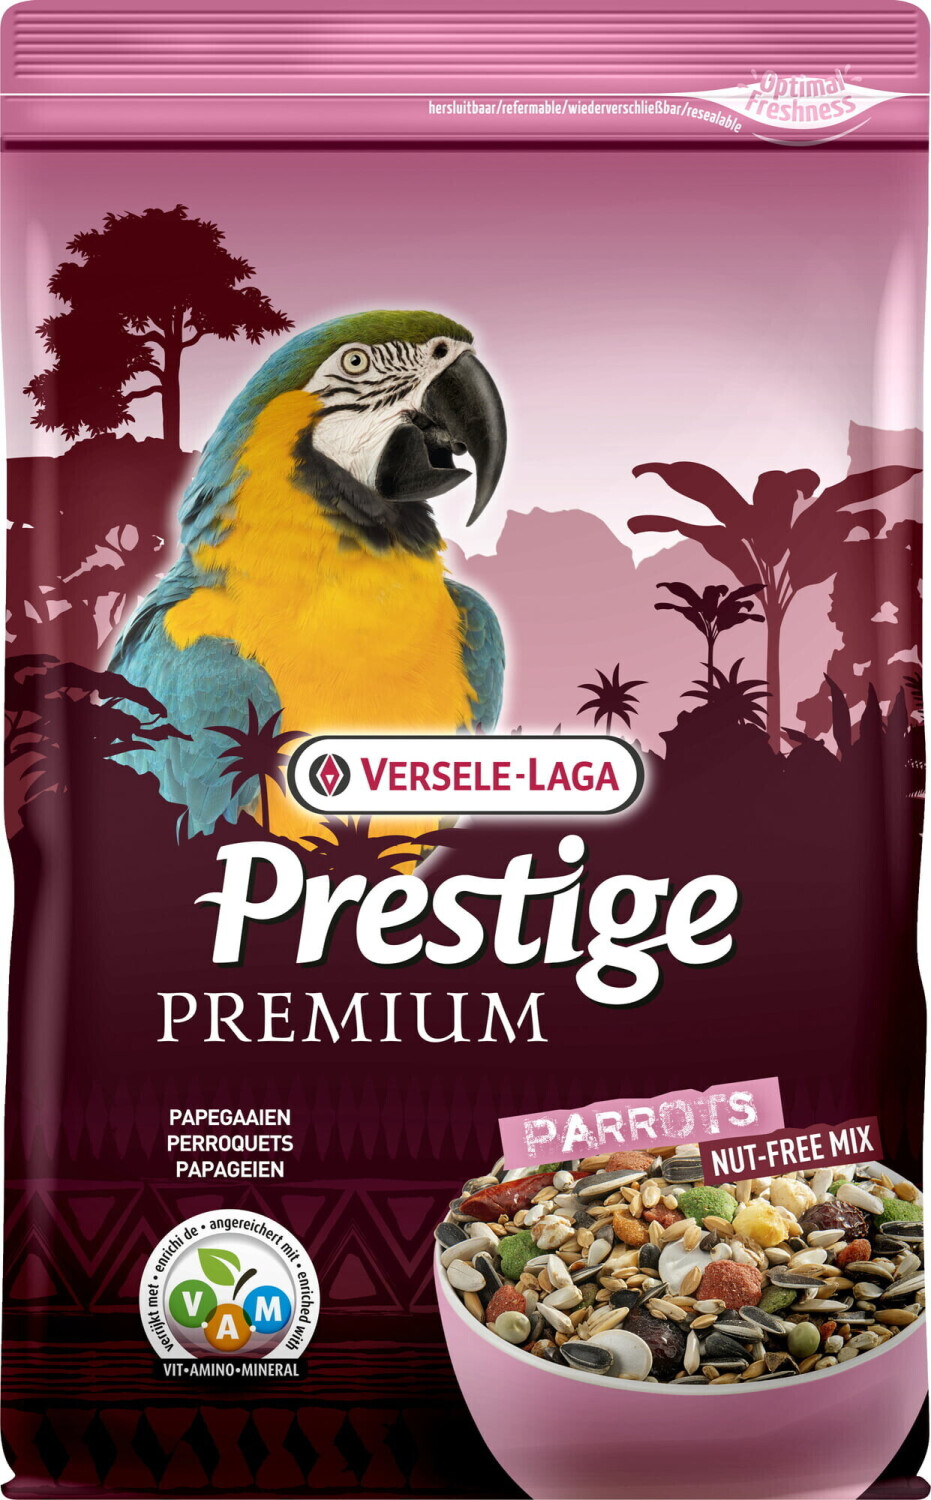 Versele-Laga Prestige Premium parrots nut free mix au meilleur prix sur